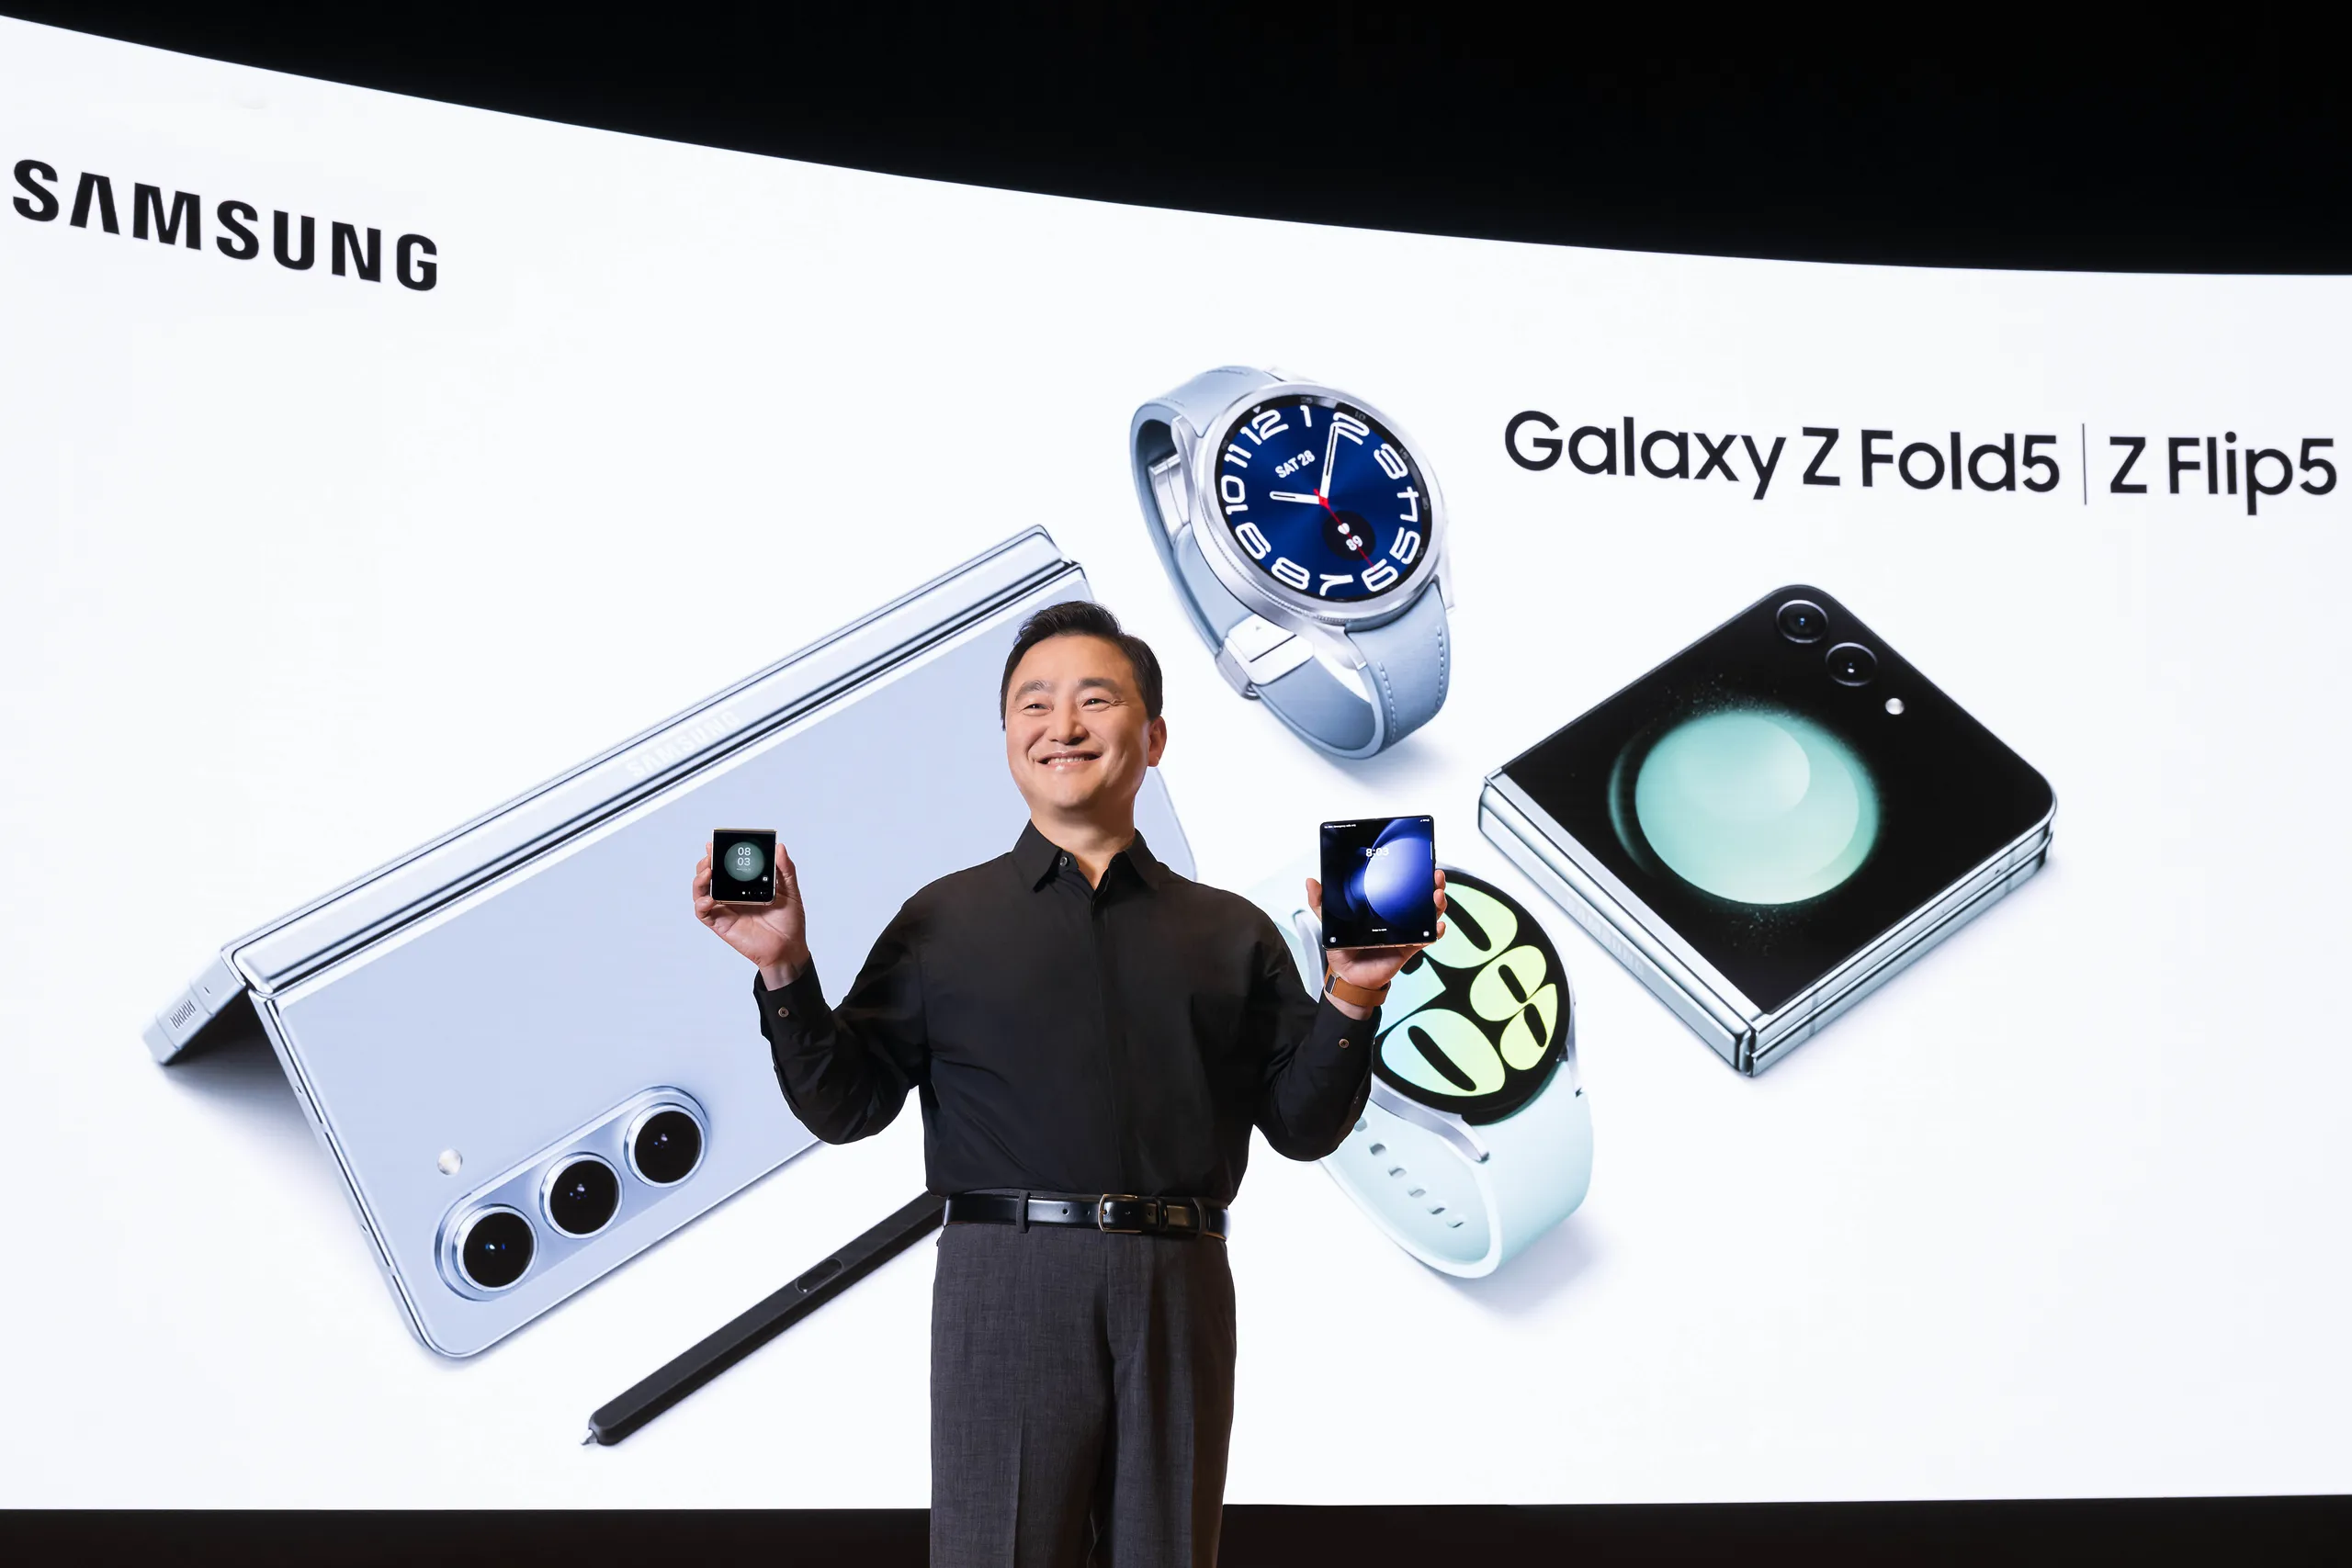 Galaxy Z thế hệ 5 gây sửng sốt tại sự kiện Unpacked năm nay bởi thiết kế độc bản ấn tượng, sang trọng và thời trang